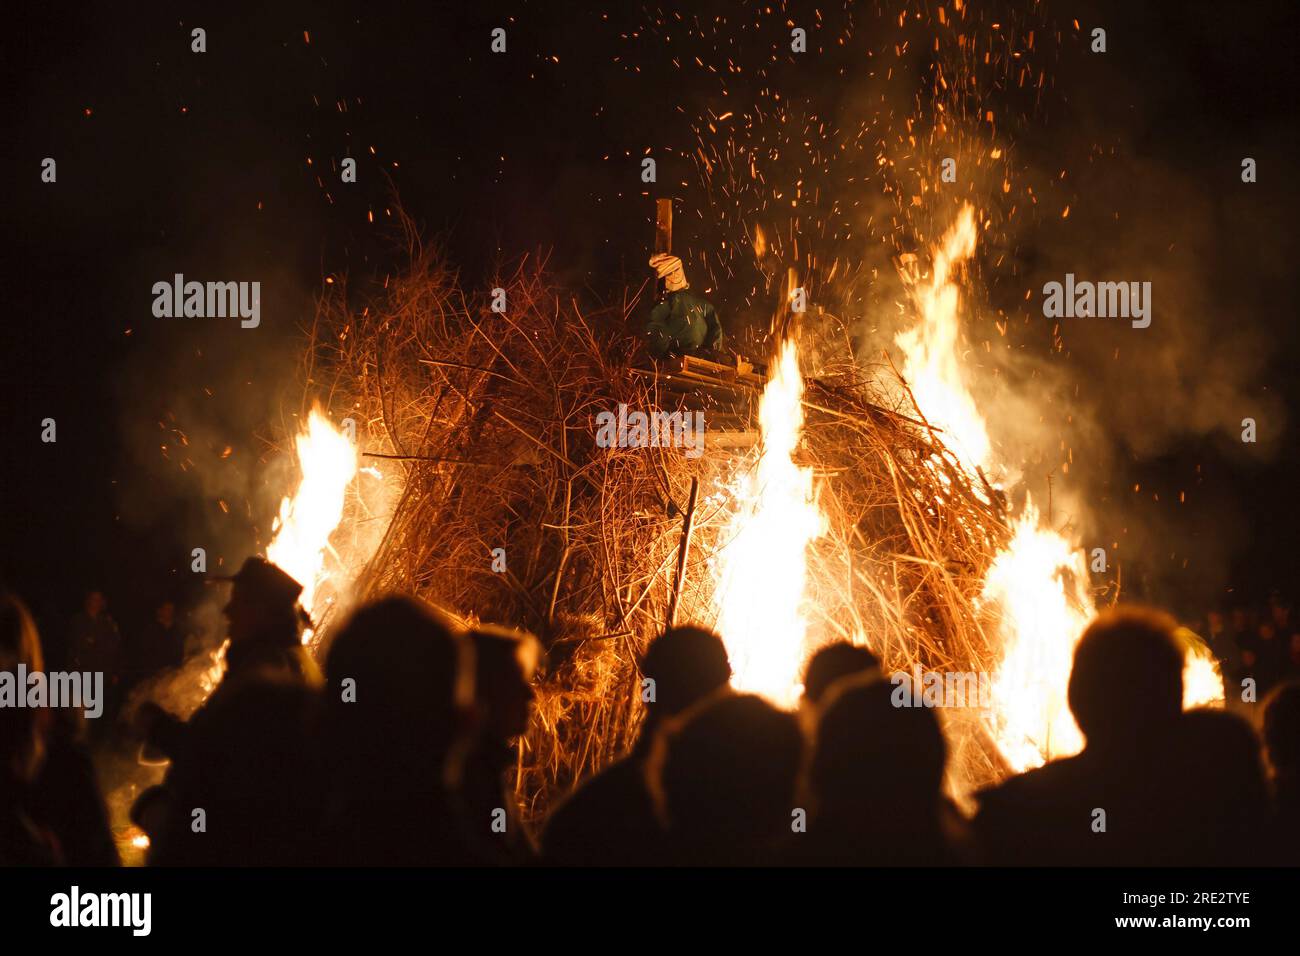 Les gens regardent comme une effigie de Guy Fawkes brûle sur un feu de joie nuit dans le Surrey, Angleterre, Royaume-Uni. Aucun visage reconnaissable Banque D'Images